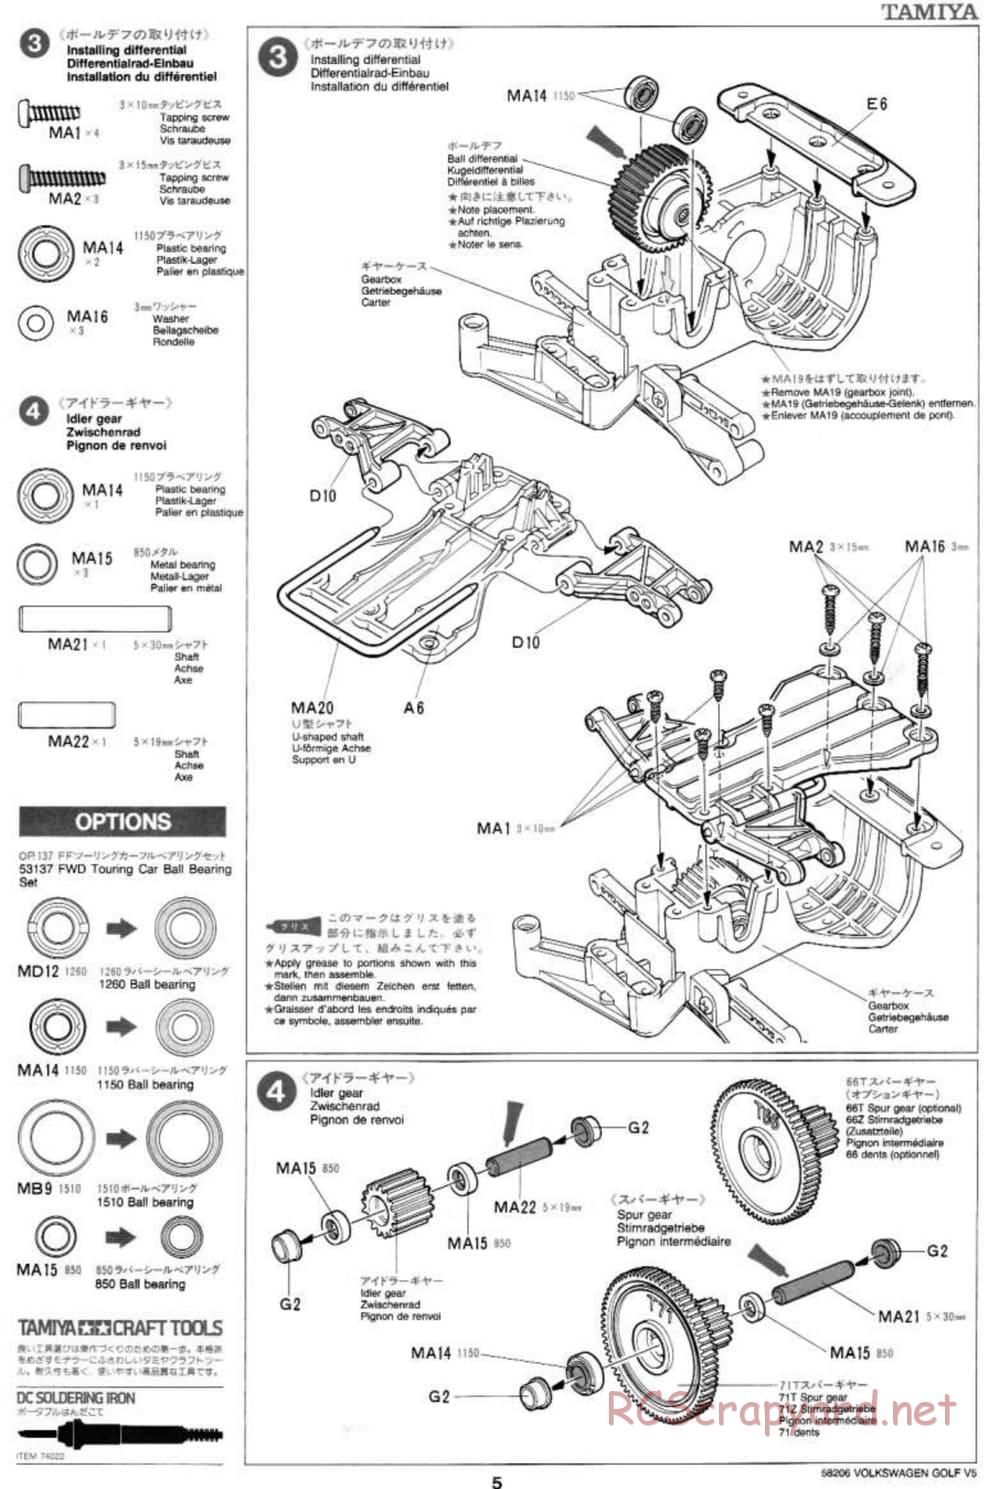 Tamiya - Volkswagen Golf V5 - FF-01 Chassis - Manual - Page 5